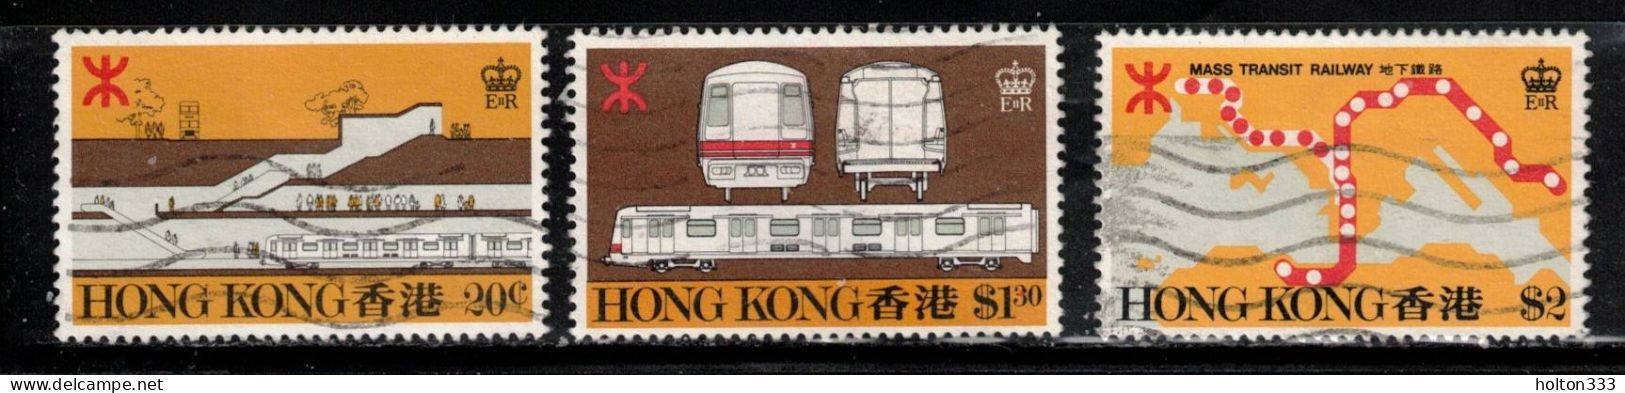 HONG KONG Scott # 358-60 Used - Hong Kong Railway - Usados